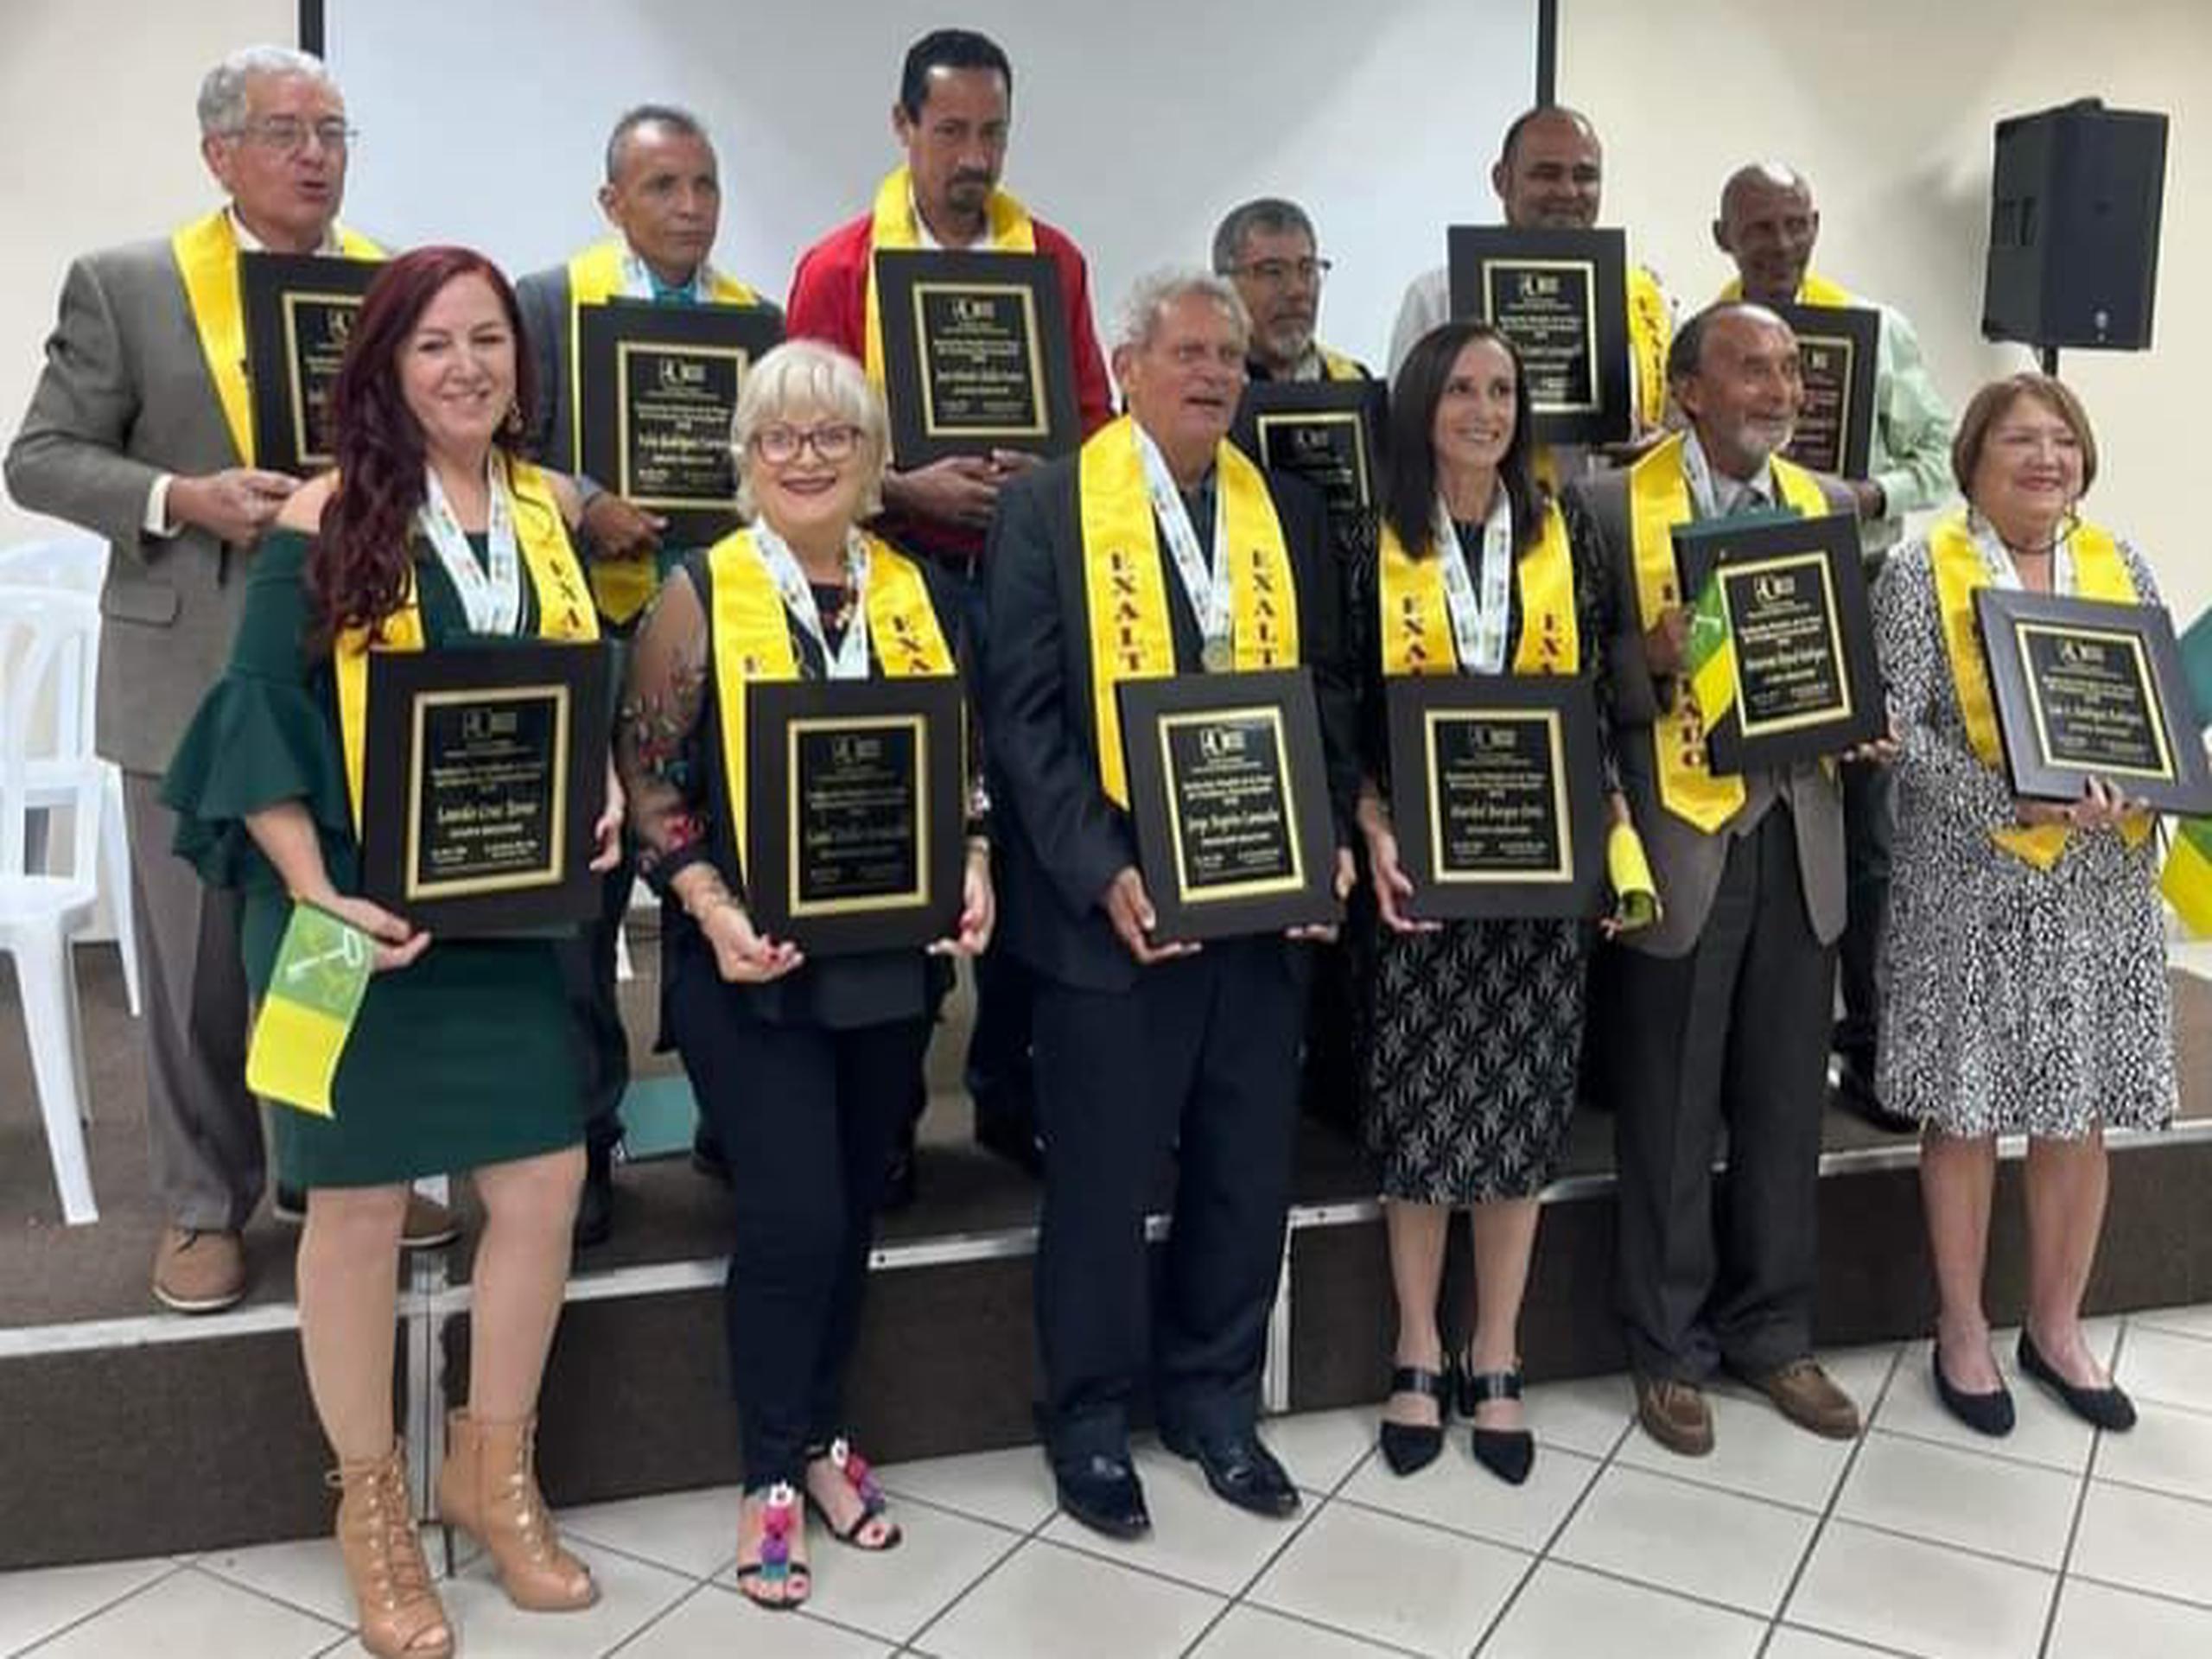 Los exaltados o representantes de estos fueron reconocidos como nuevos miembros del Salón de la Fama del Fondismo de Puerto Rico en una ceremonia celebrada en Toa Baja.